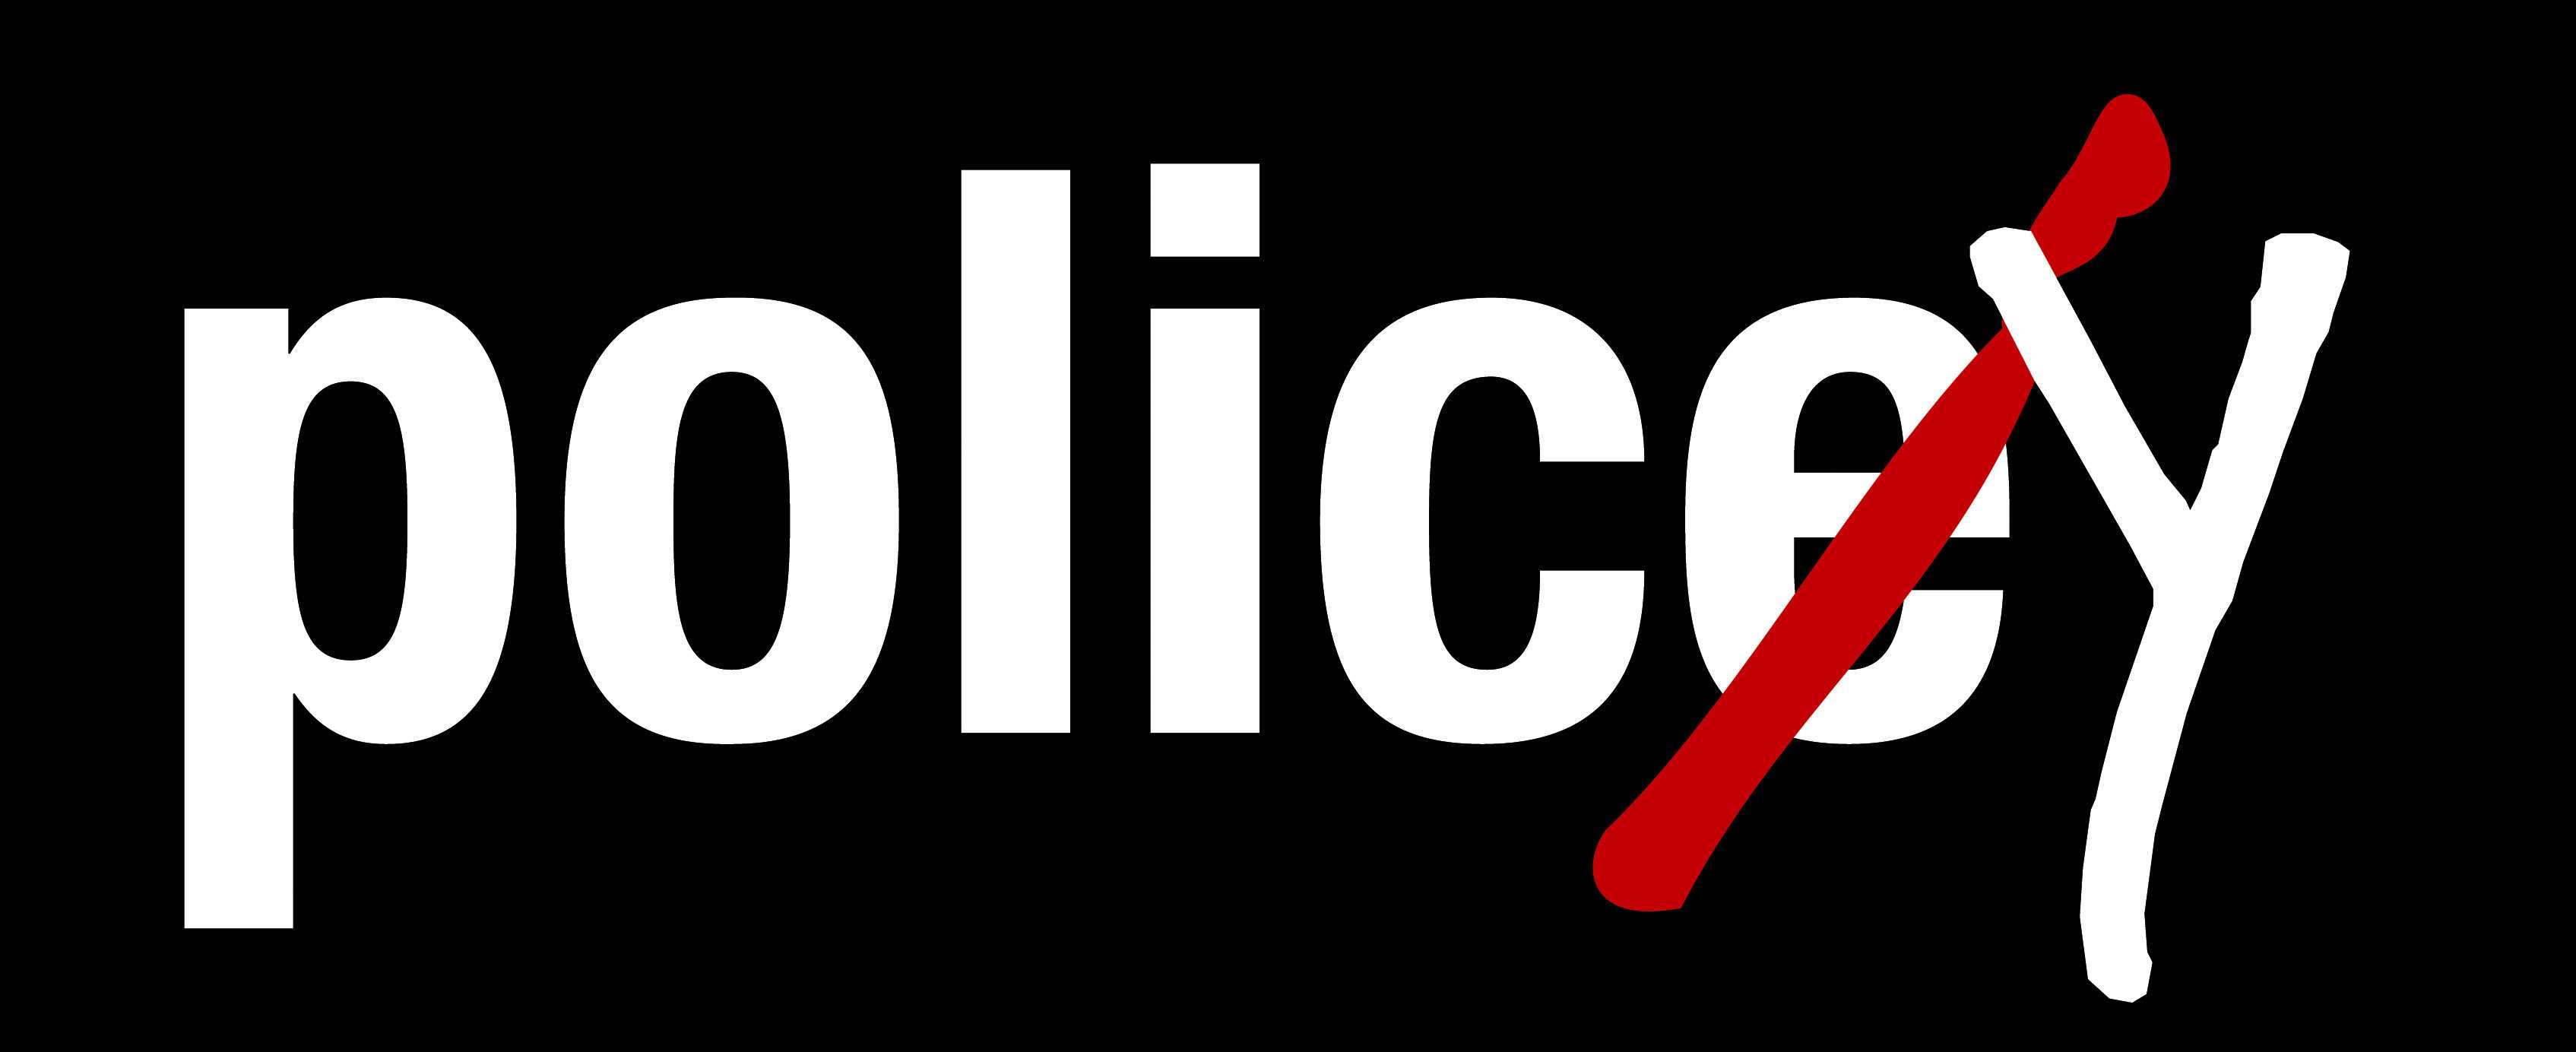 police.jpg